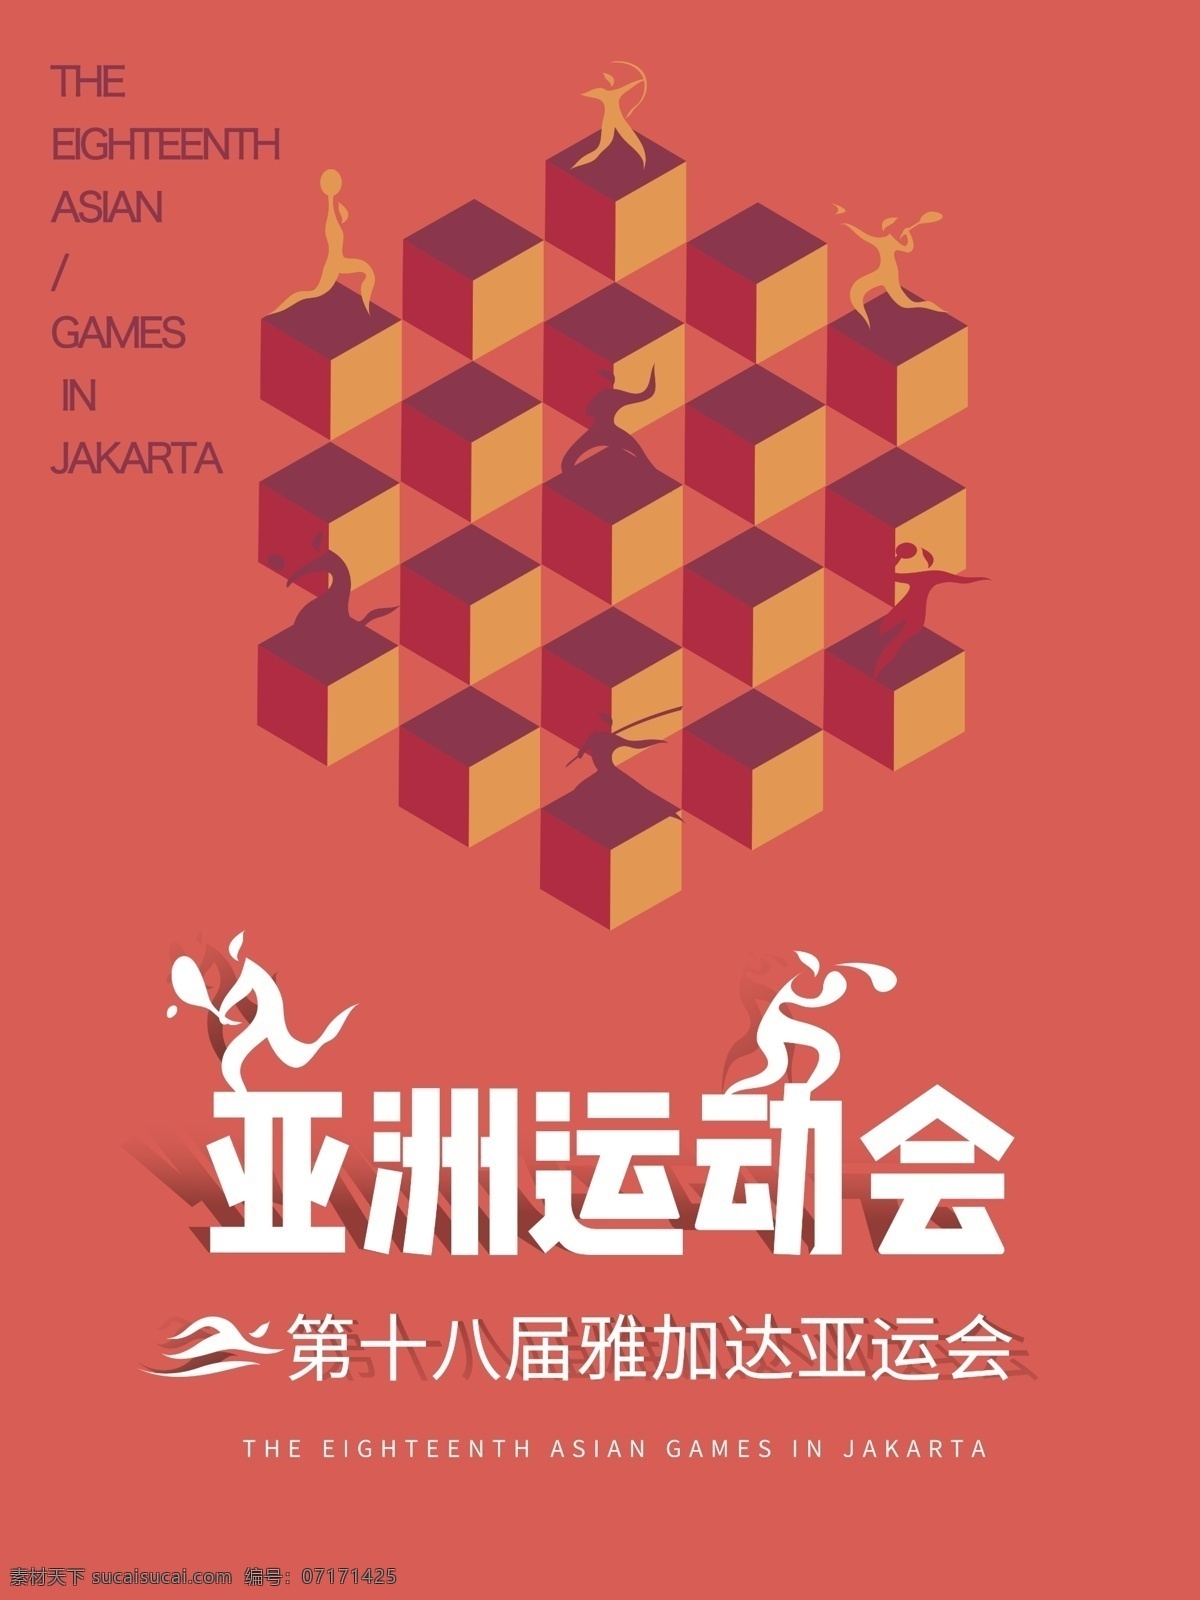 亚运会 中国队 加油 运动会 运动会海报 体育海报 几何海报 运动项目 雅加达亚运会